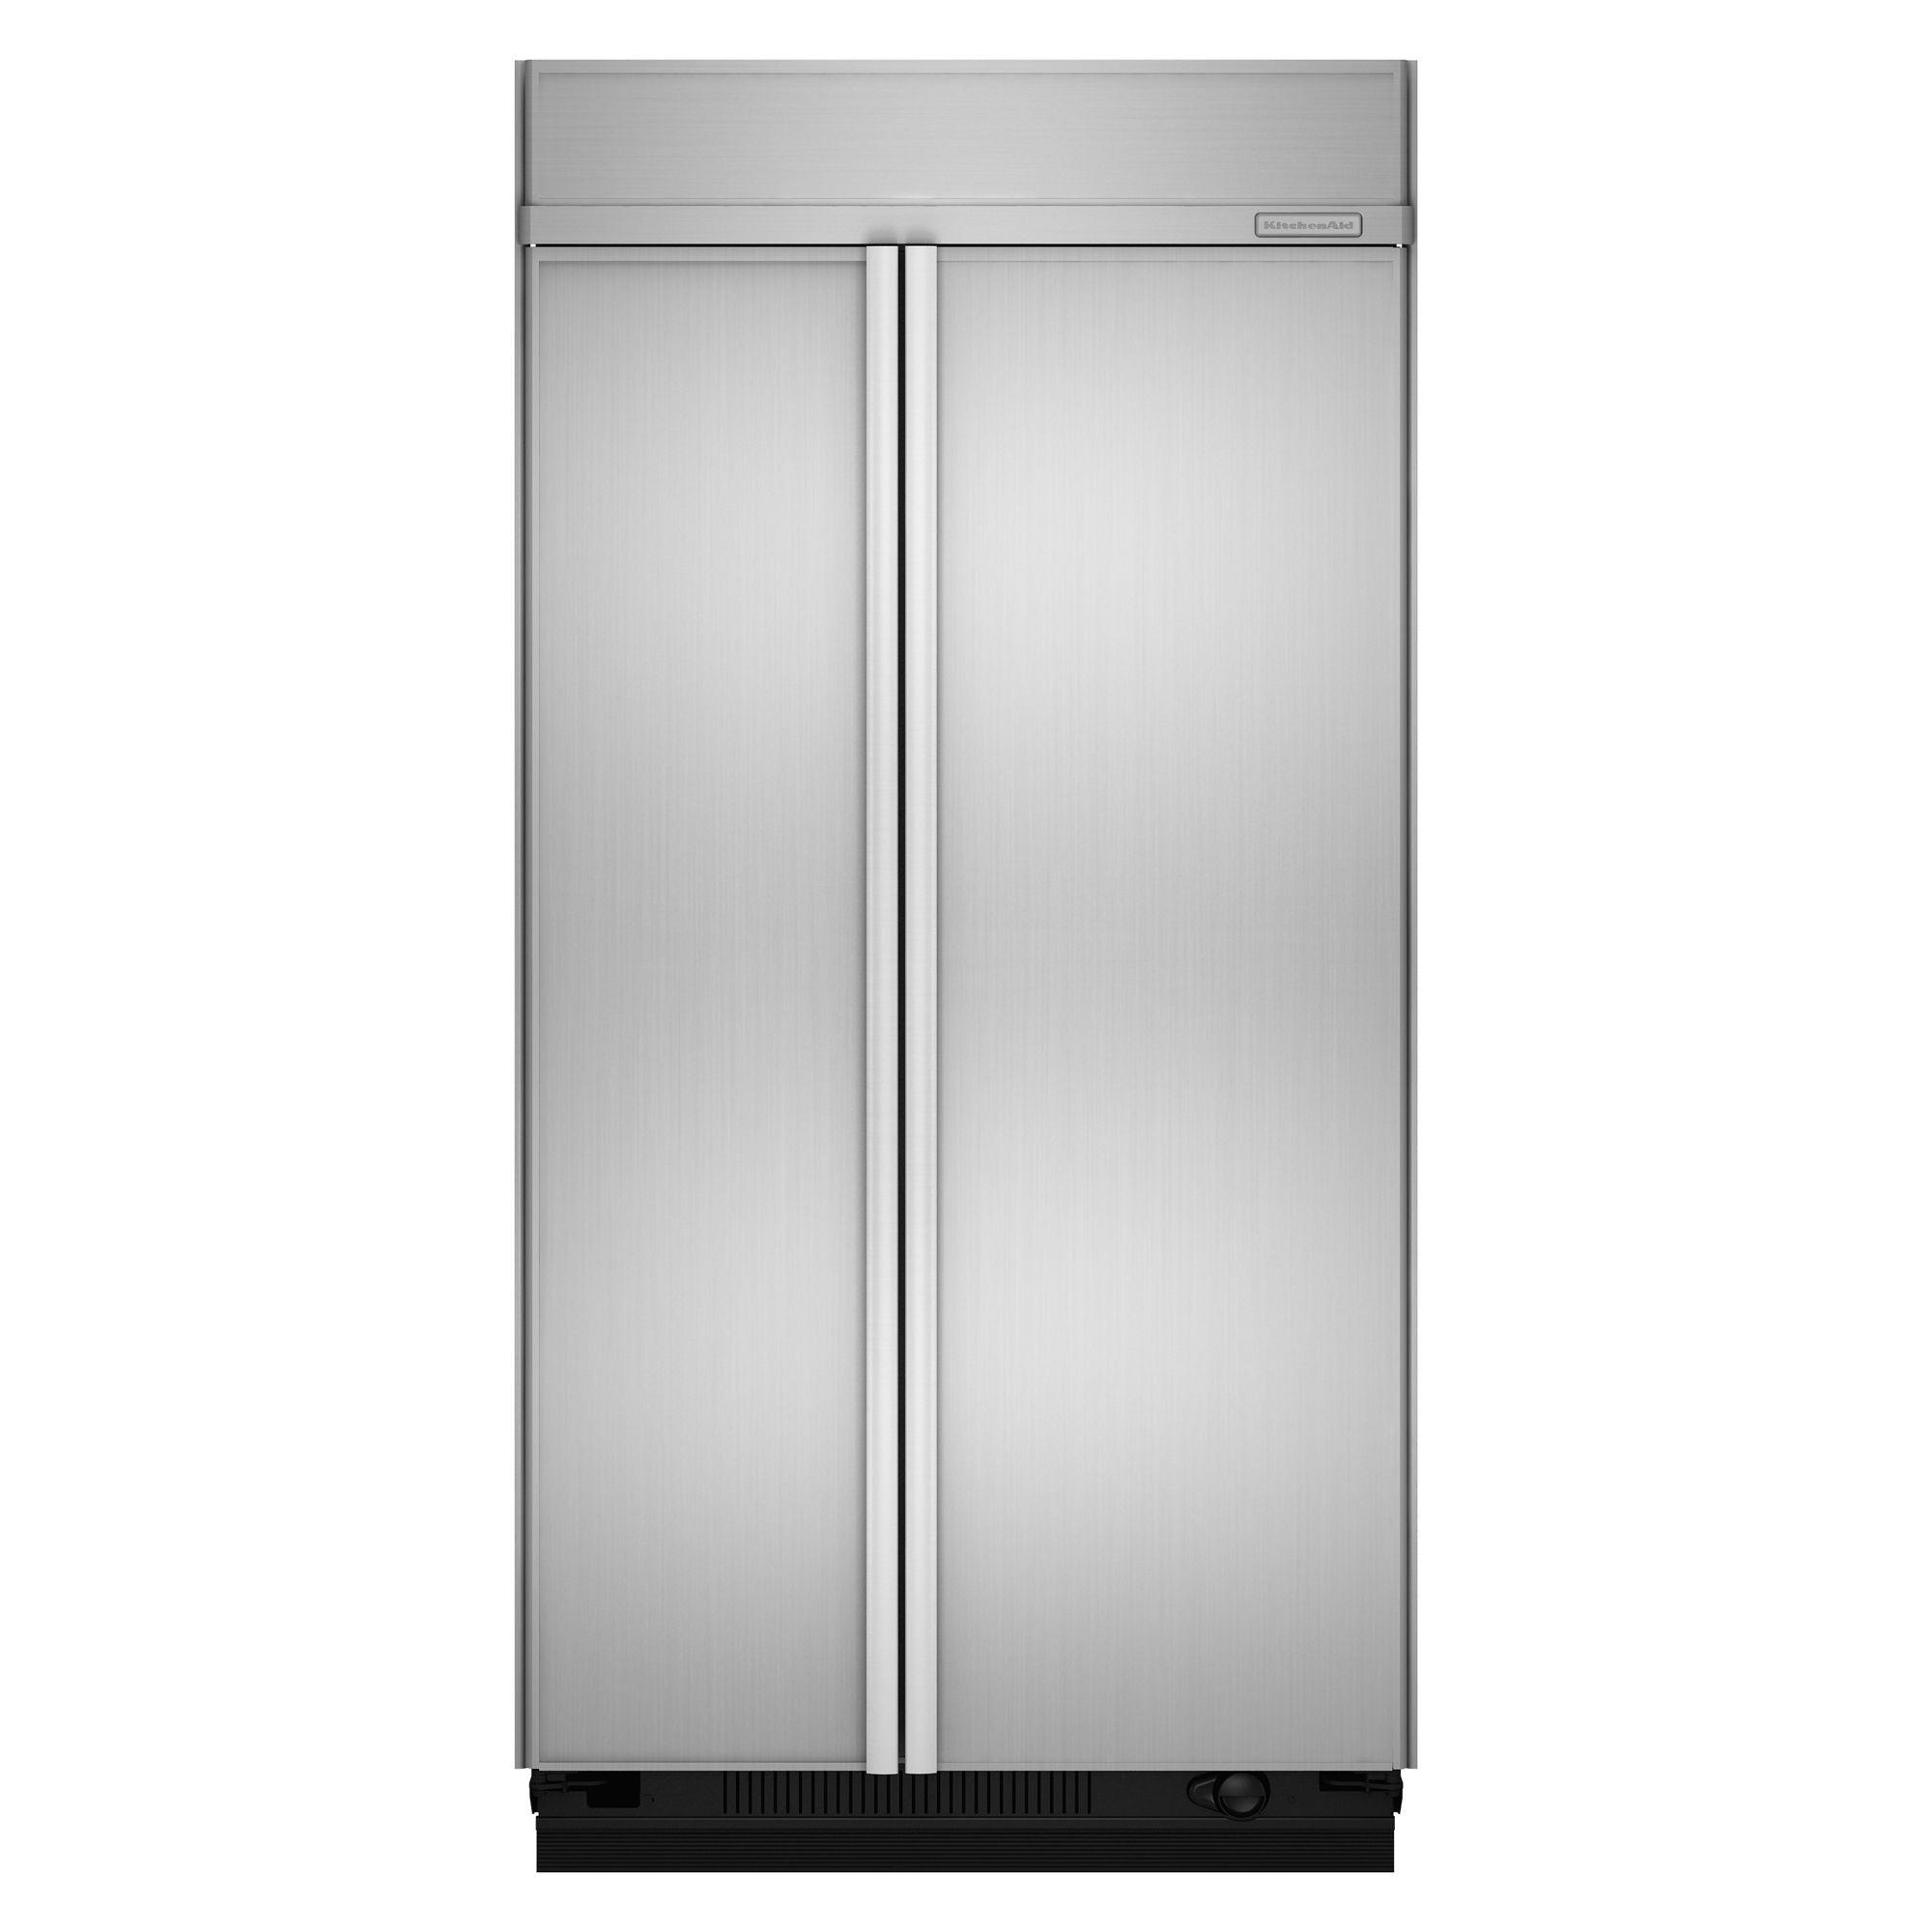 Built-In Refrigerator logo